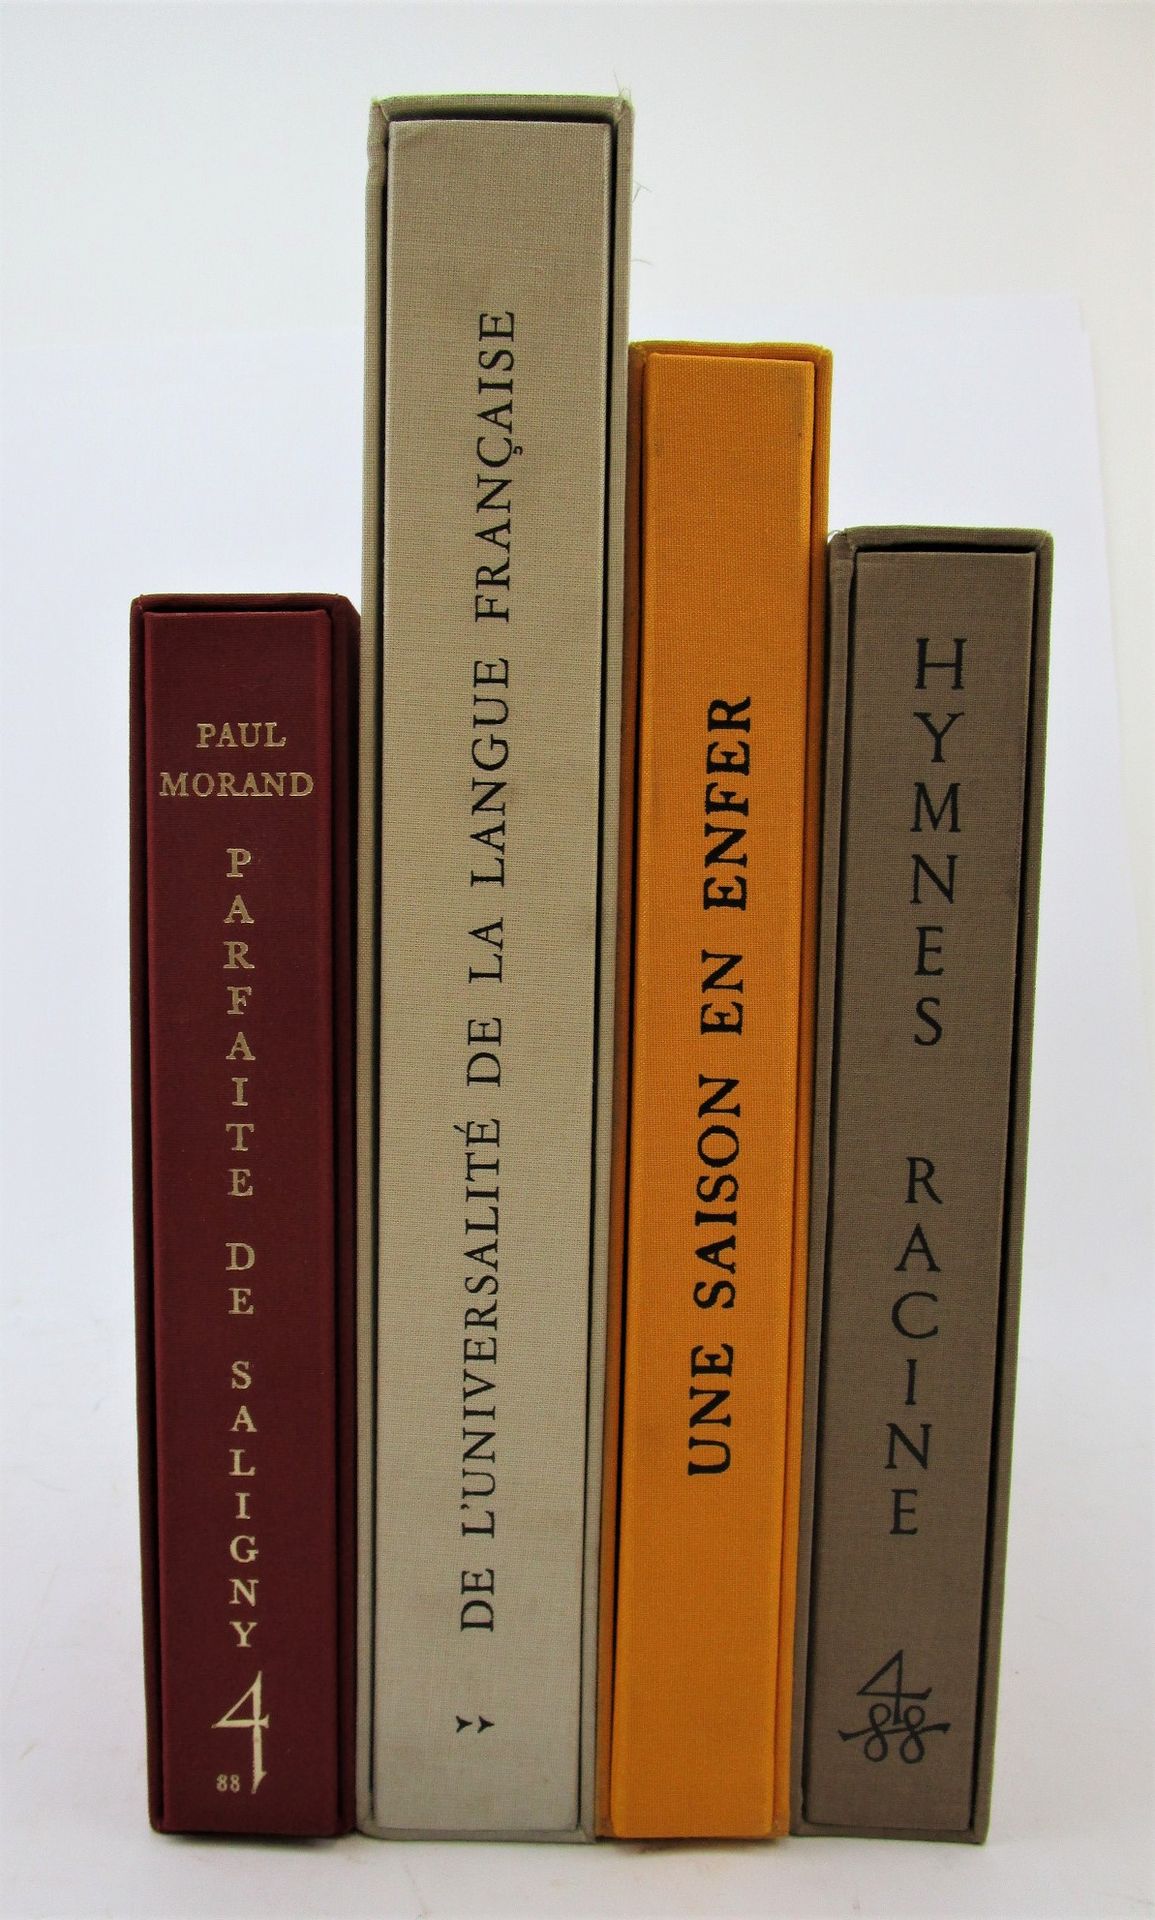 Null (La Compagnie Typographique) - Set bestehend aus 4 Bänden.
1/Morand, Paul. &hellip;